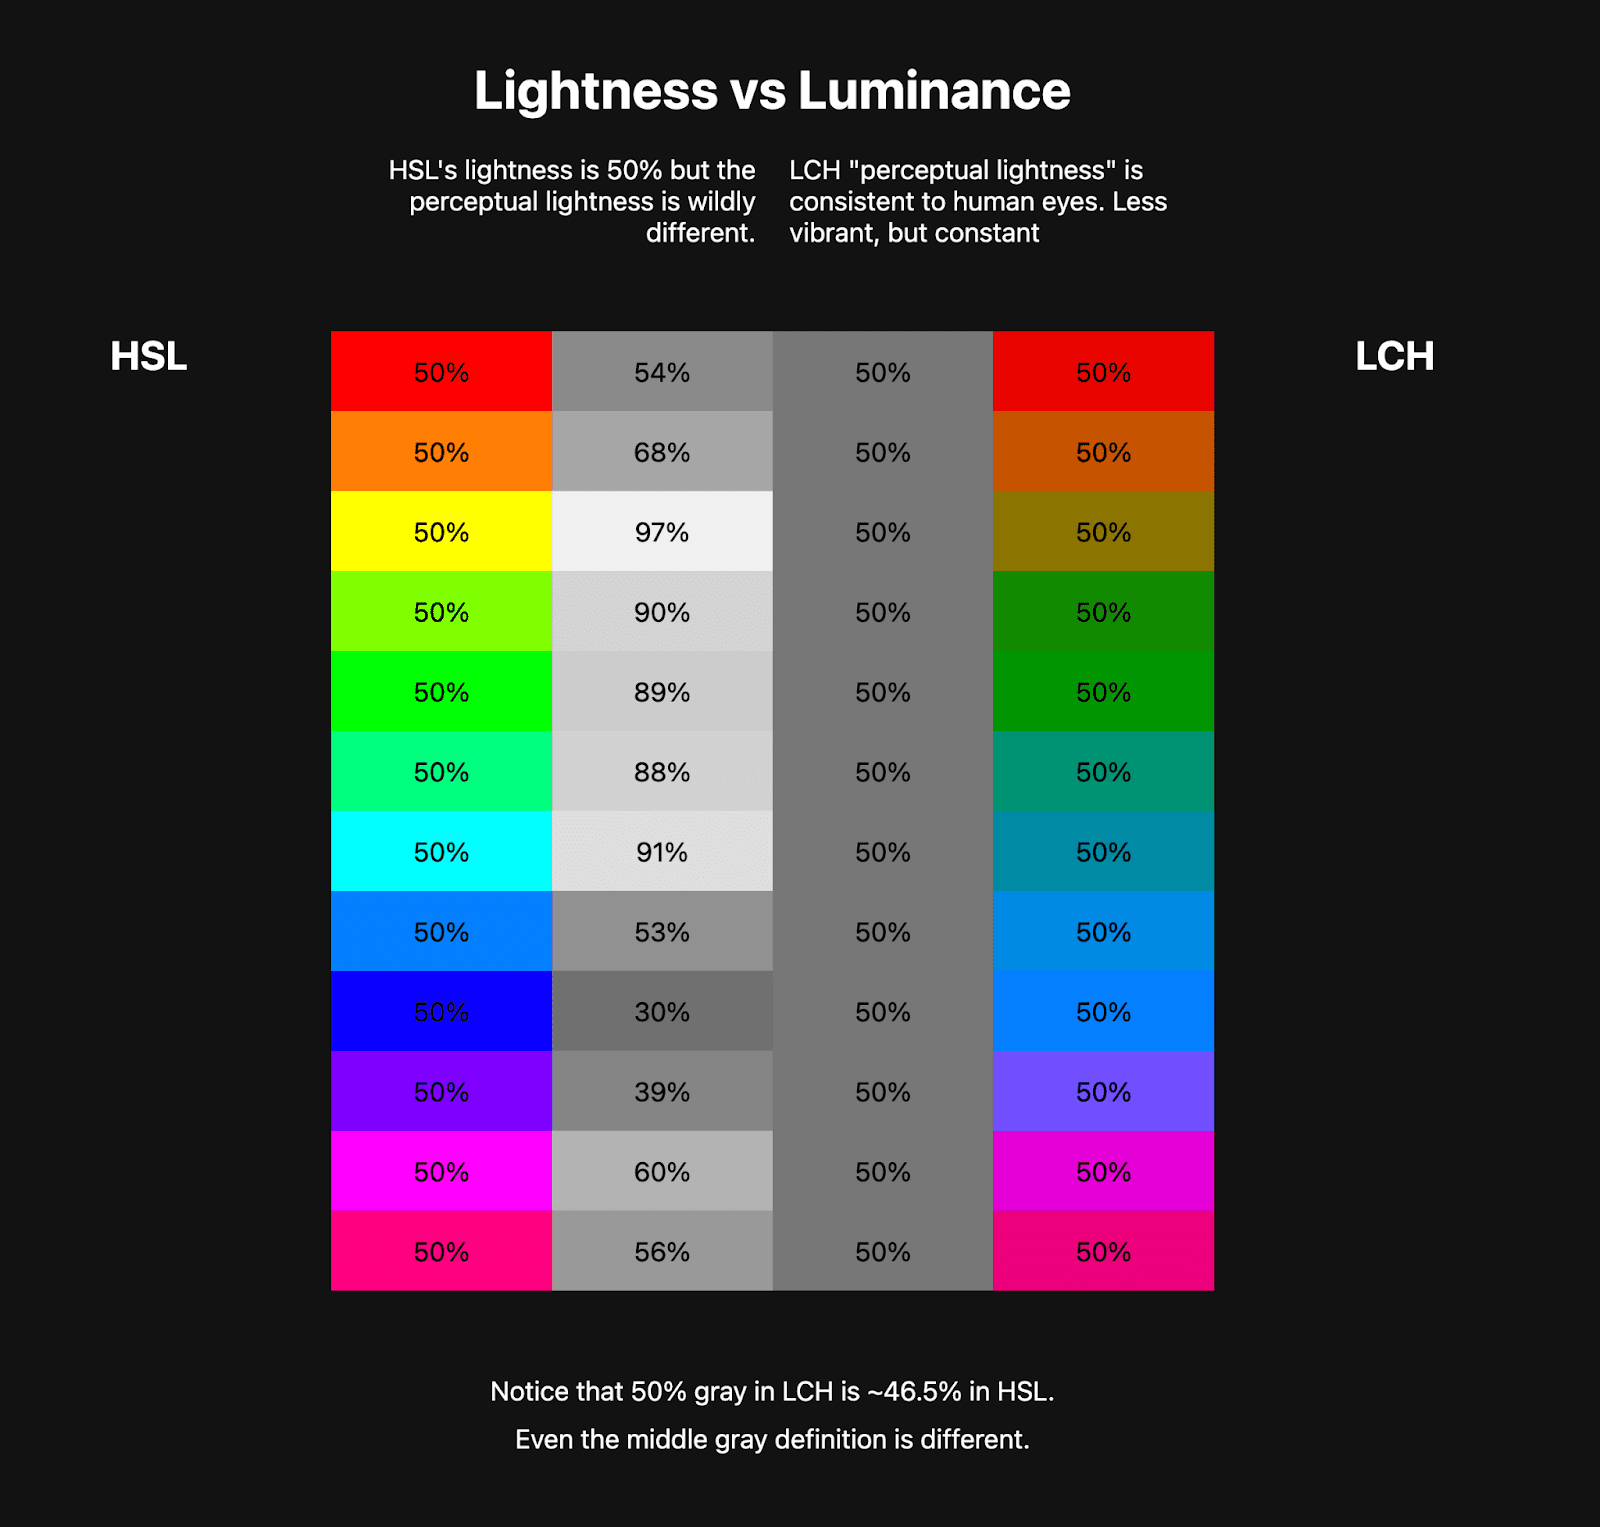 Две таблицы цветов расположены рядом. В первой таблице показана радуга HSL, состоящая примерно из 10 цветов, а рядом с ней — цвета в оттенках серого, которые представляют яркость этих цветов HSL. Во второй таблице показана радуга LCH, гораздо менее яркая, но цвета в оттенках серого рядом с ней одинаковы. Это показывает, что LCH имеет здоровое постоянное значение яркости, а HSL — нет.